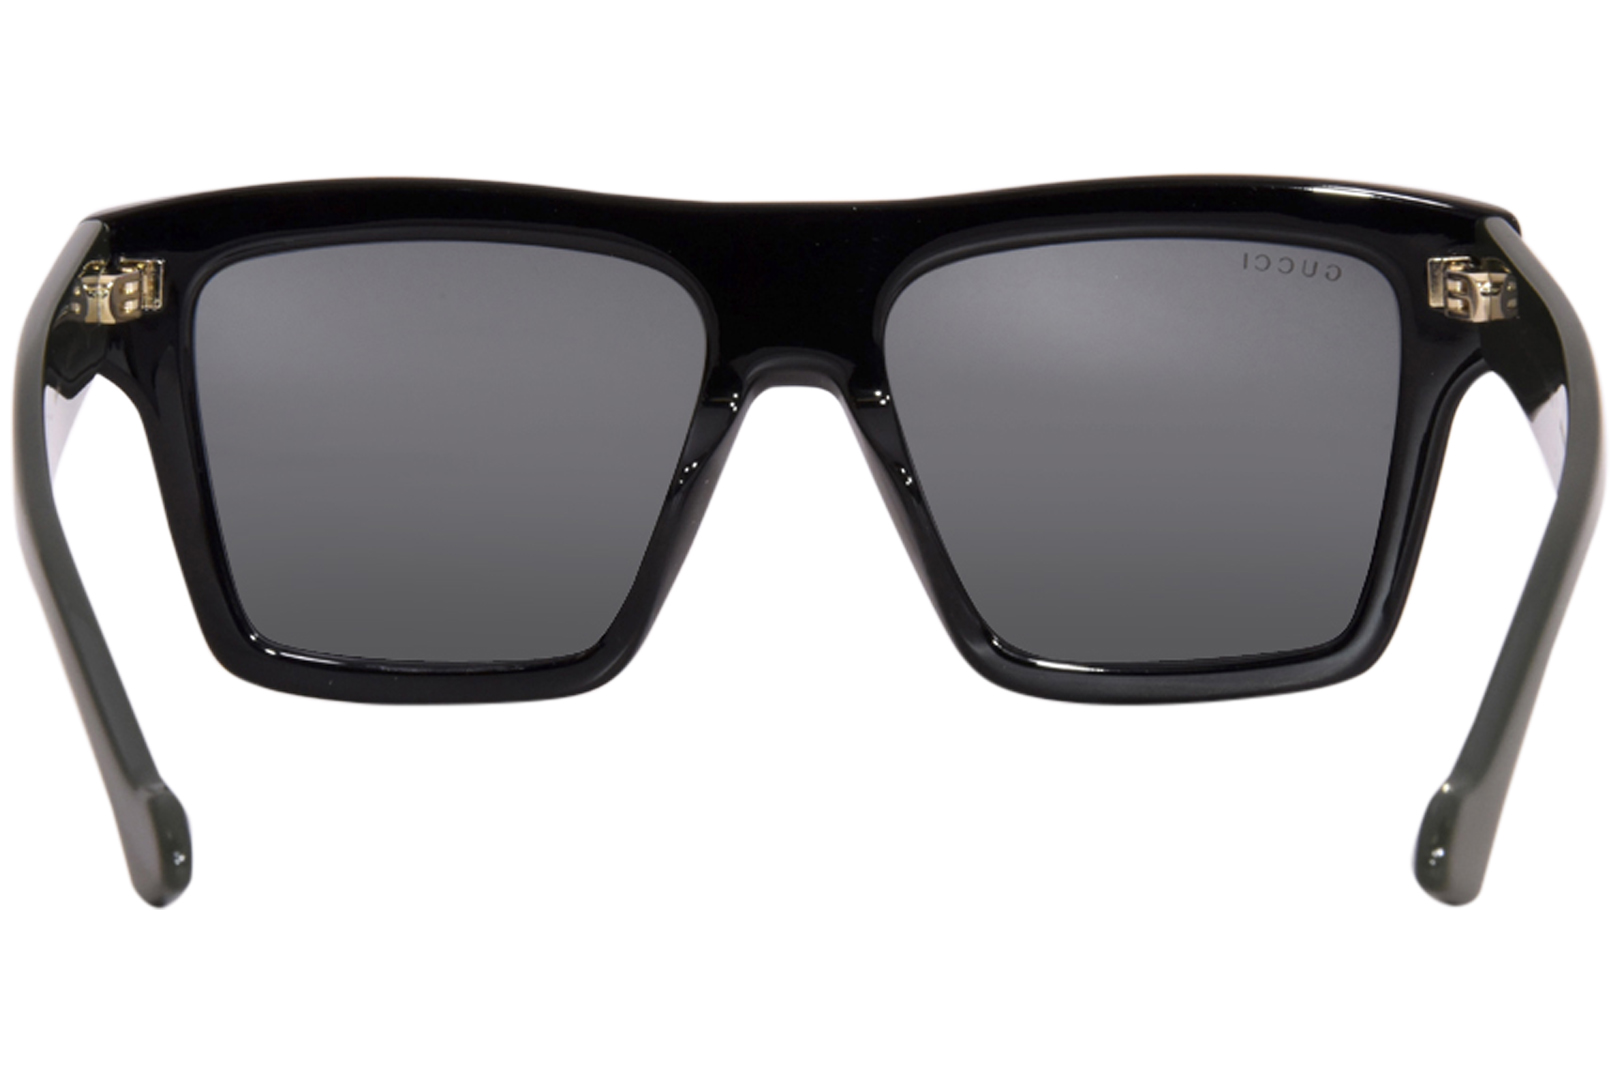 Gucci GG0962S 009 Sunglasses Men's Black/Green/Grey Square Shape 55-17 ...